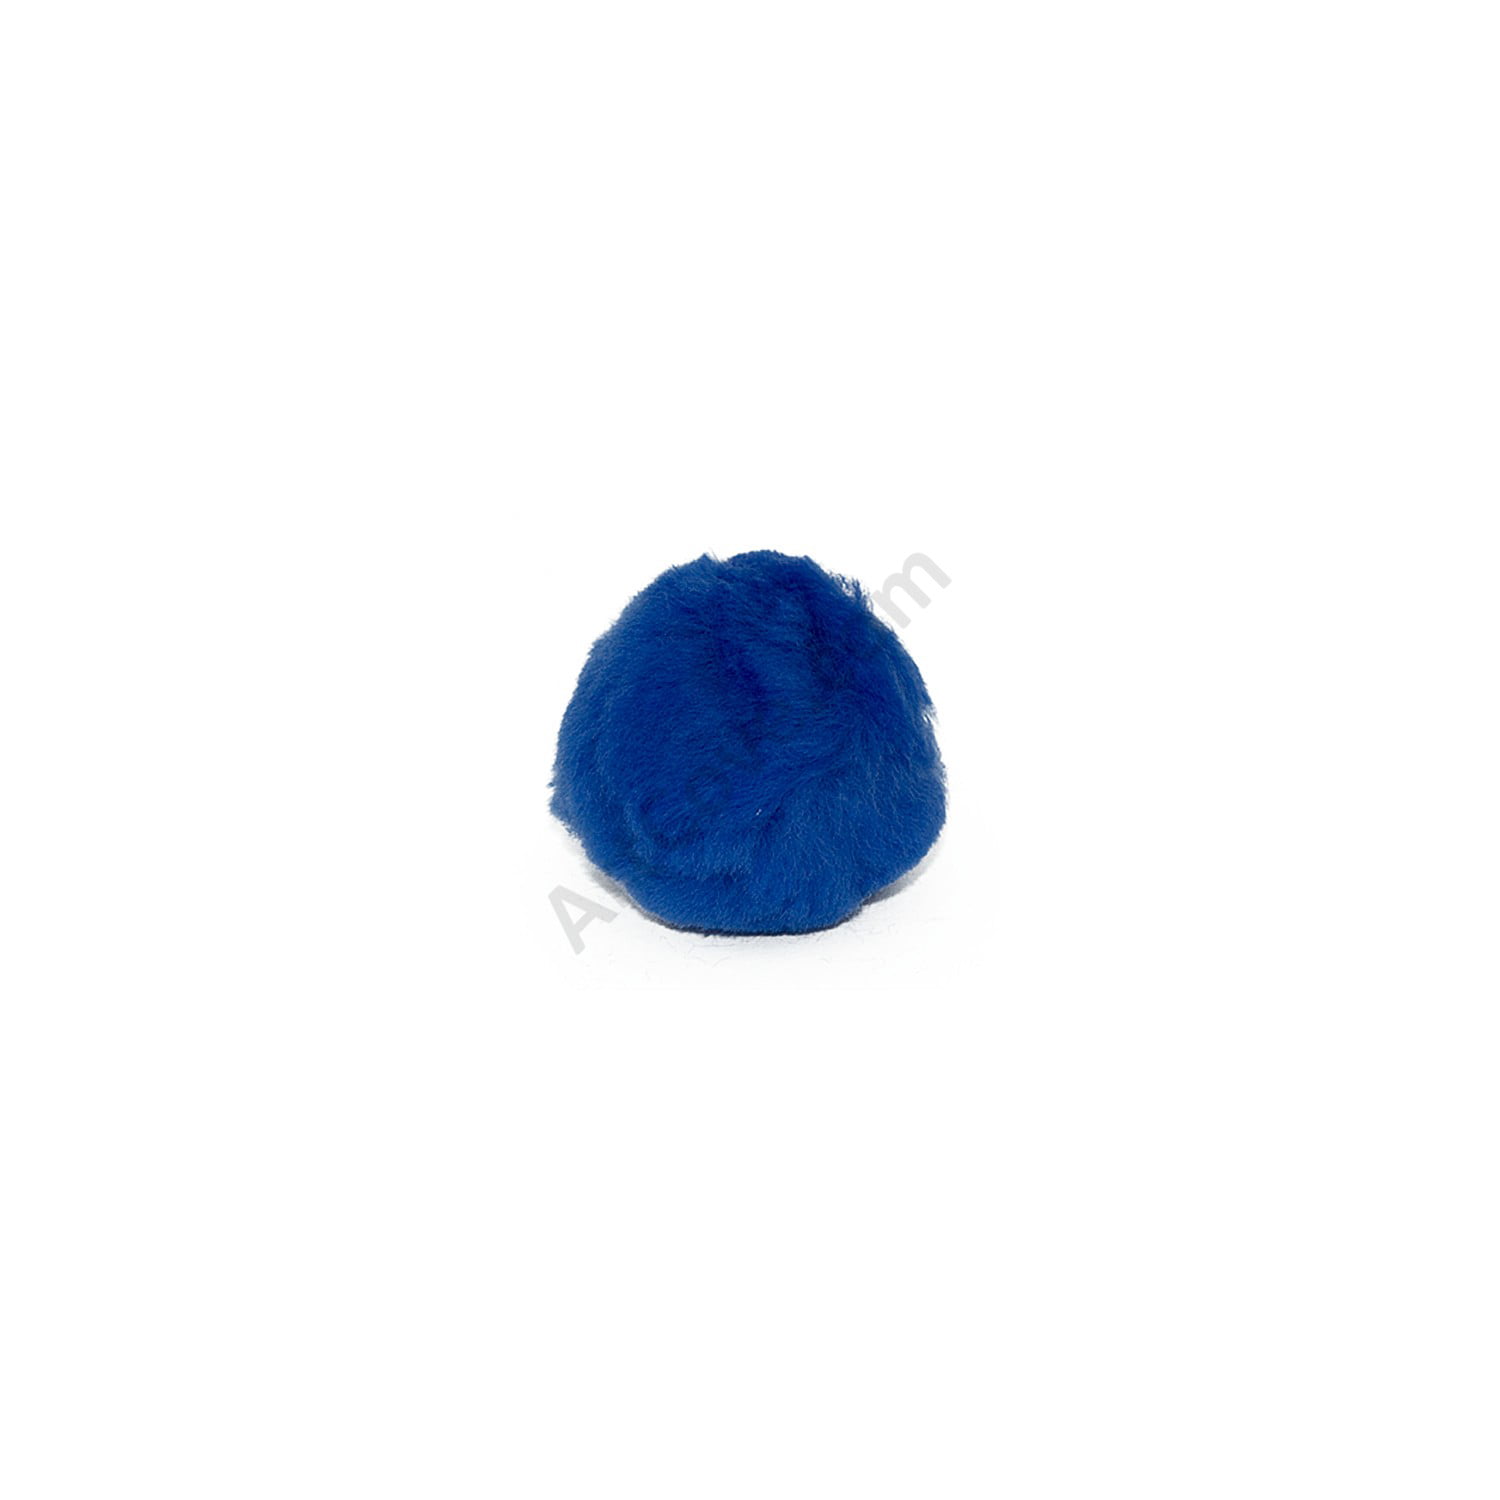 Black Craft Pom Poms - 150 Pack - Blue Squid Egypt